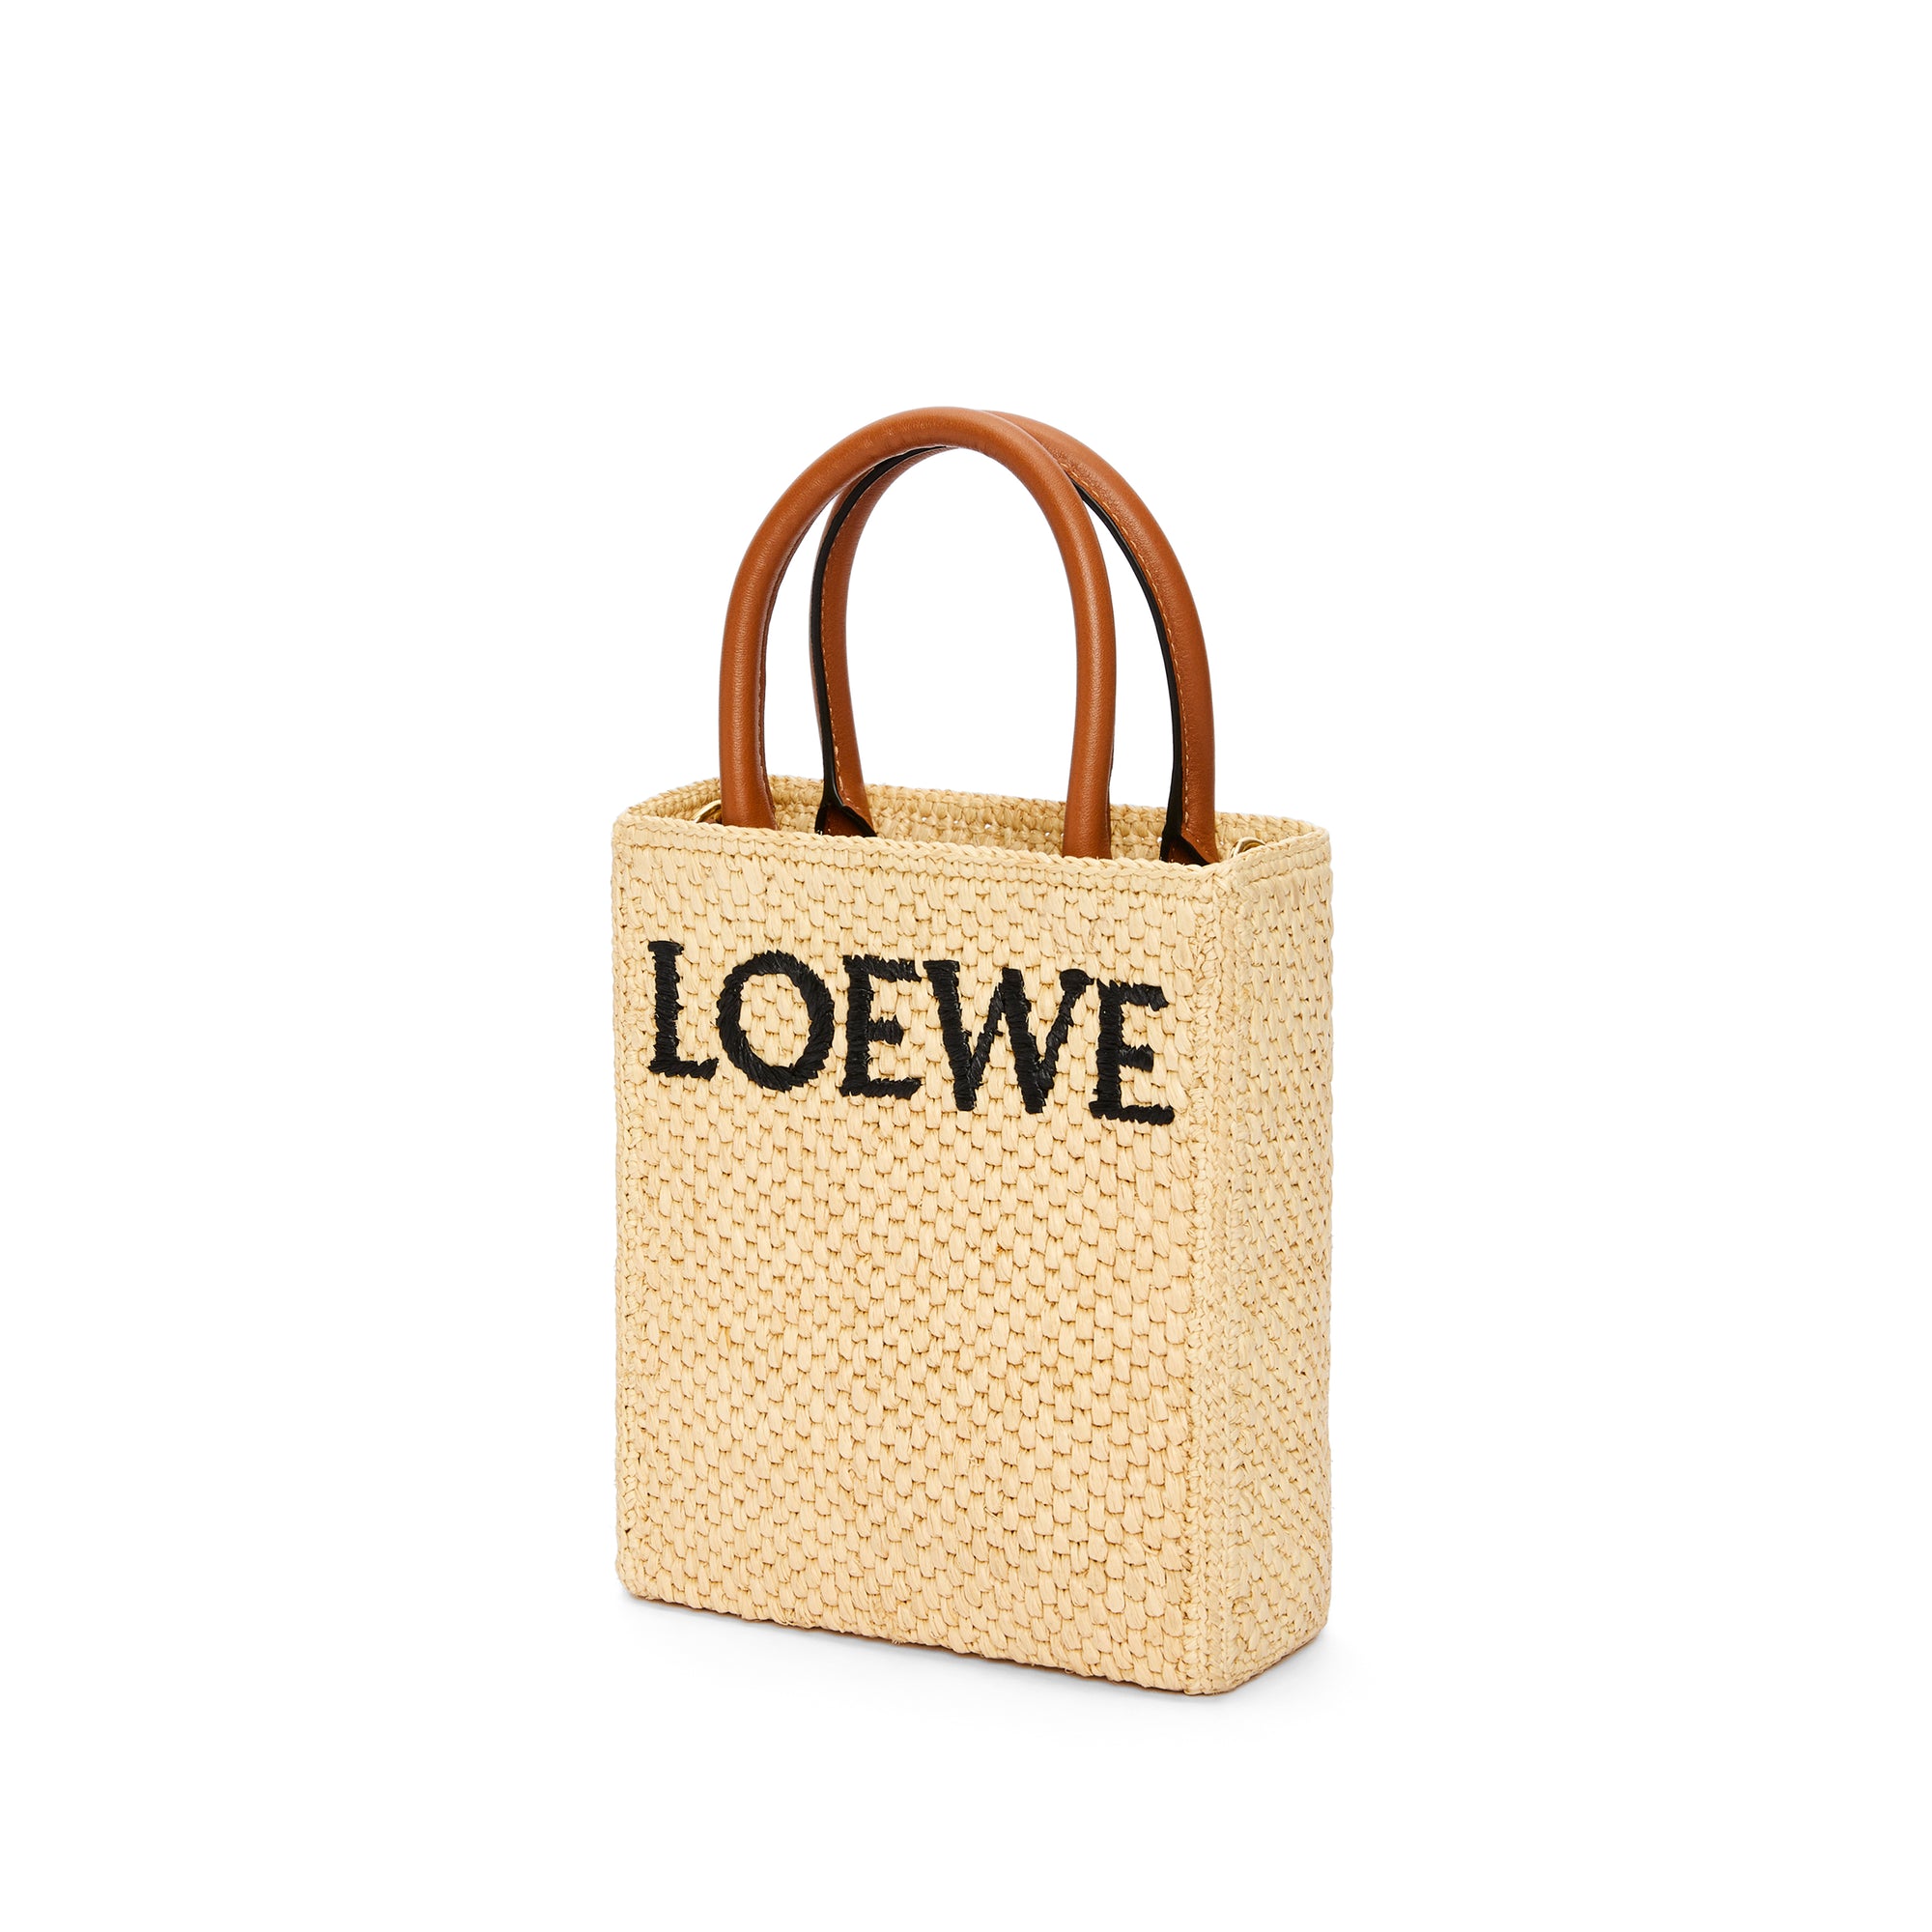 Loewe - Women’s Standard Mini Tote Bag - (Natural/Black) view 3